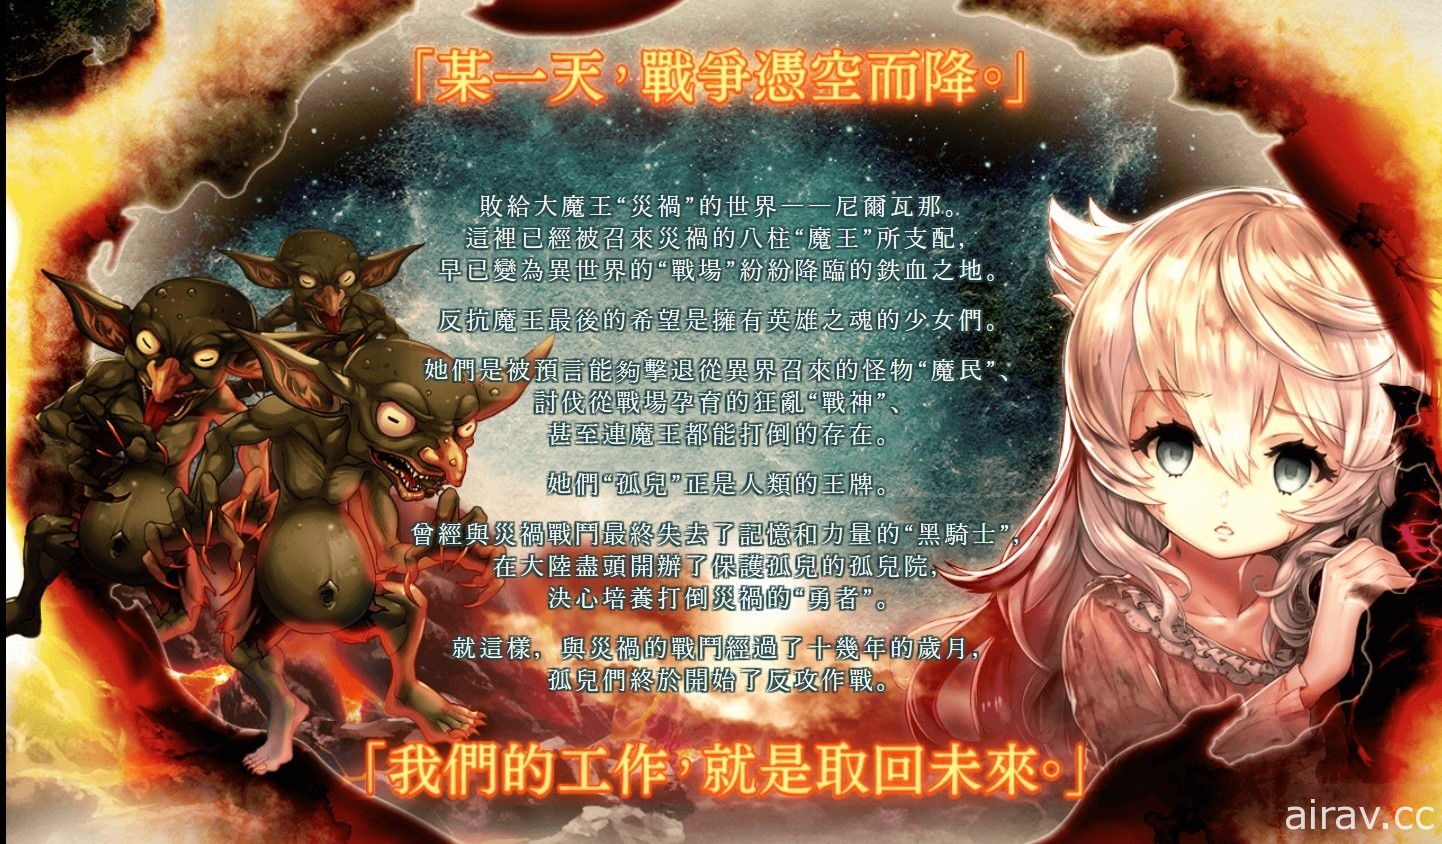 黑暗奇幻風回合制 RPG《孤兒的工作》繁體中文版於 Johren 平台上線